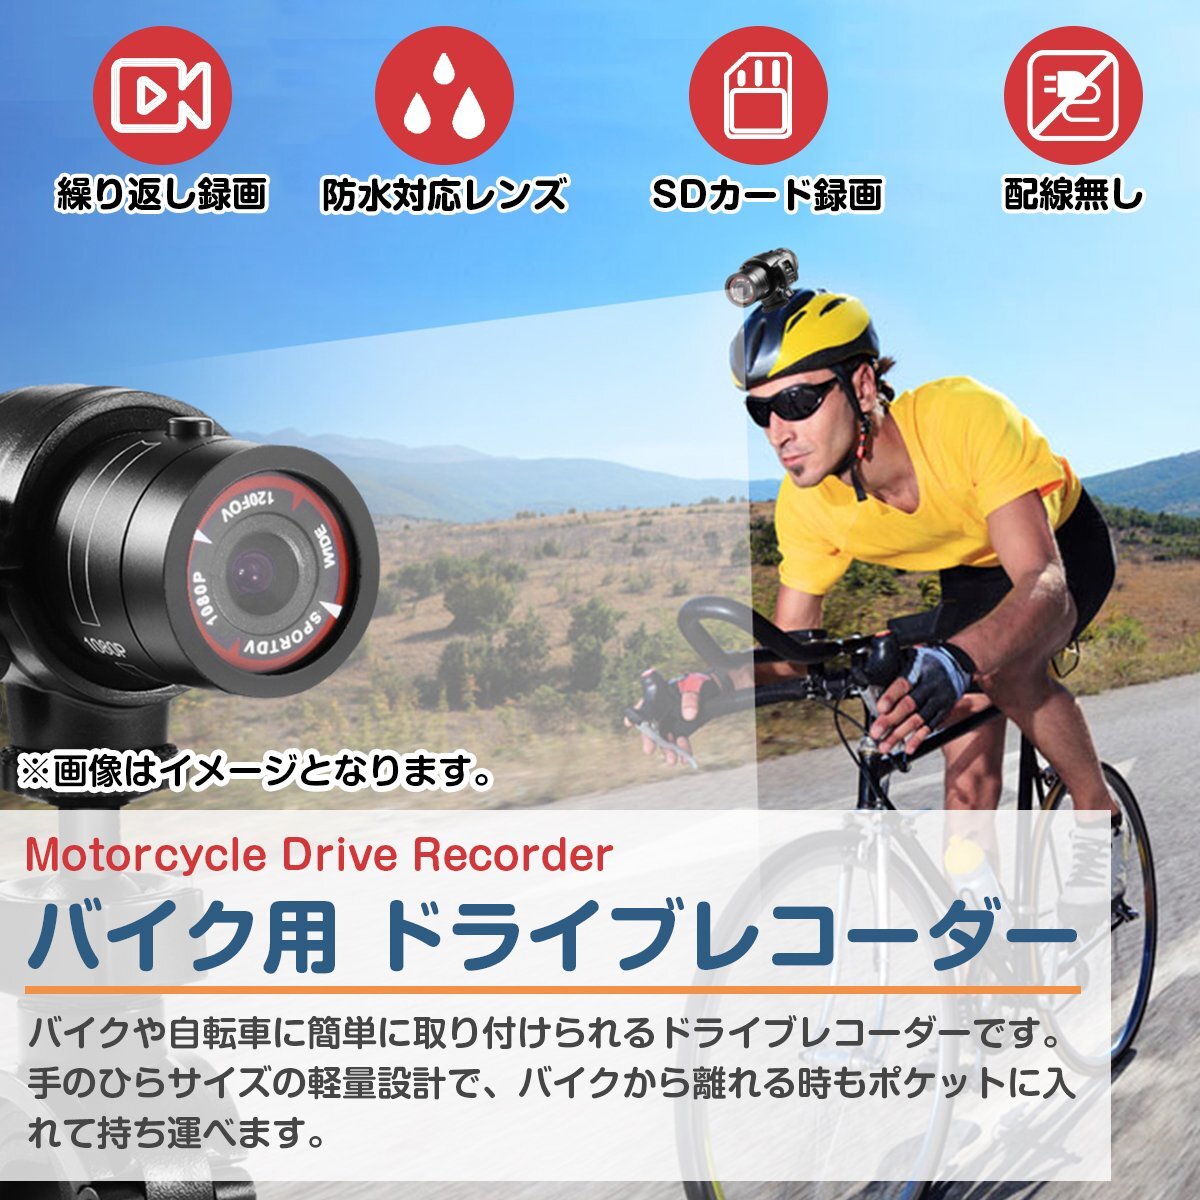 120度ワイド撮影 1080p 取付簡単 バイク ドライブレコーダー USBケーブル付き コンパクト 広角 配線なし 防水 ドラレコ カメラ 軽量 自転車_dcmr-a-008-xx-01-a